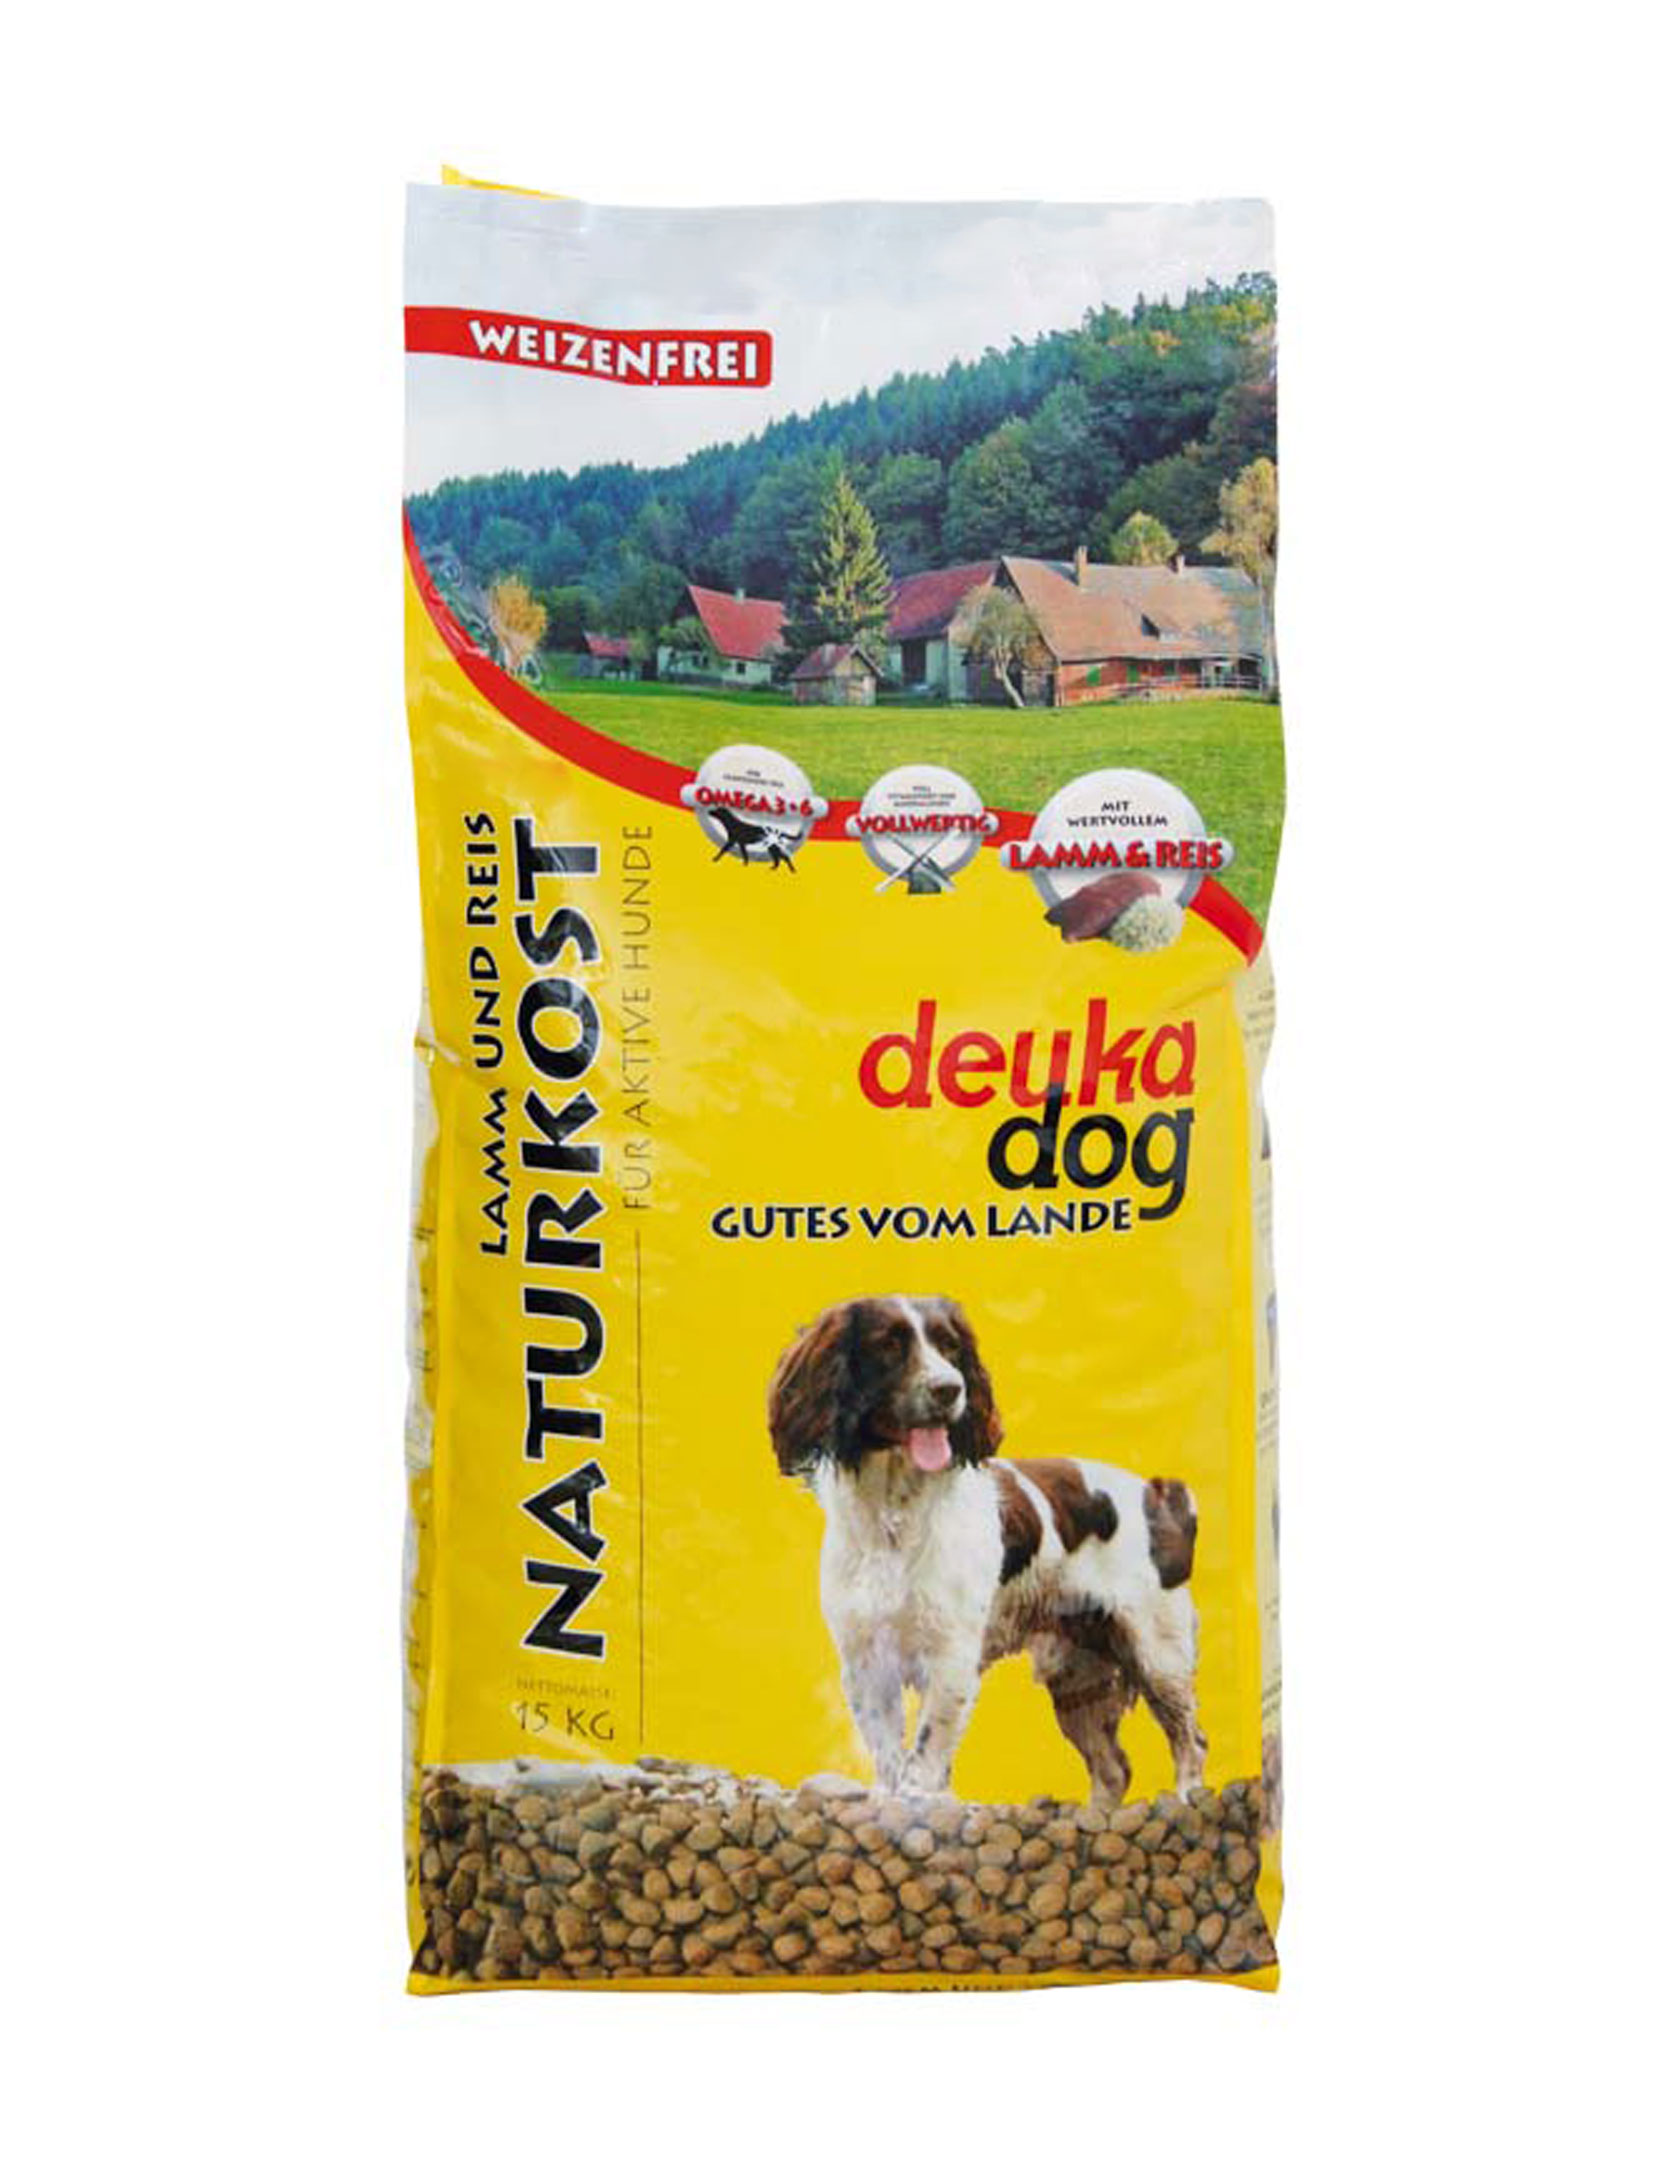 DEUKA DOG Naturkost 15 kg - Lamm und Reis für aktive Hunde